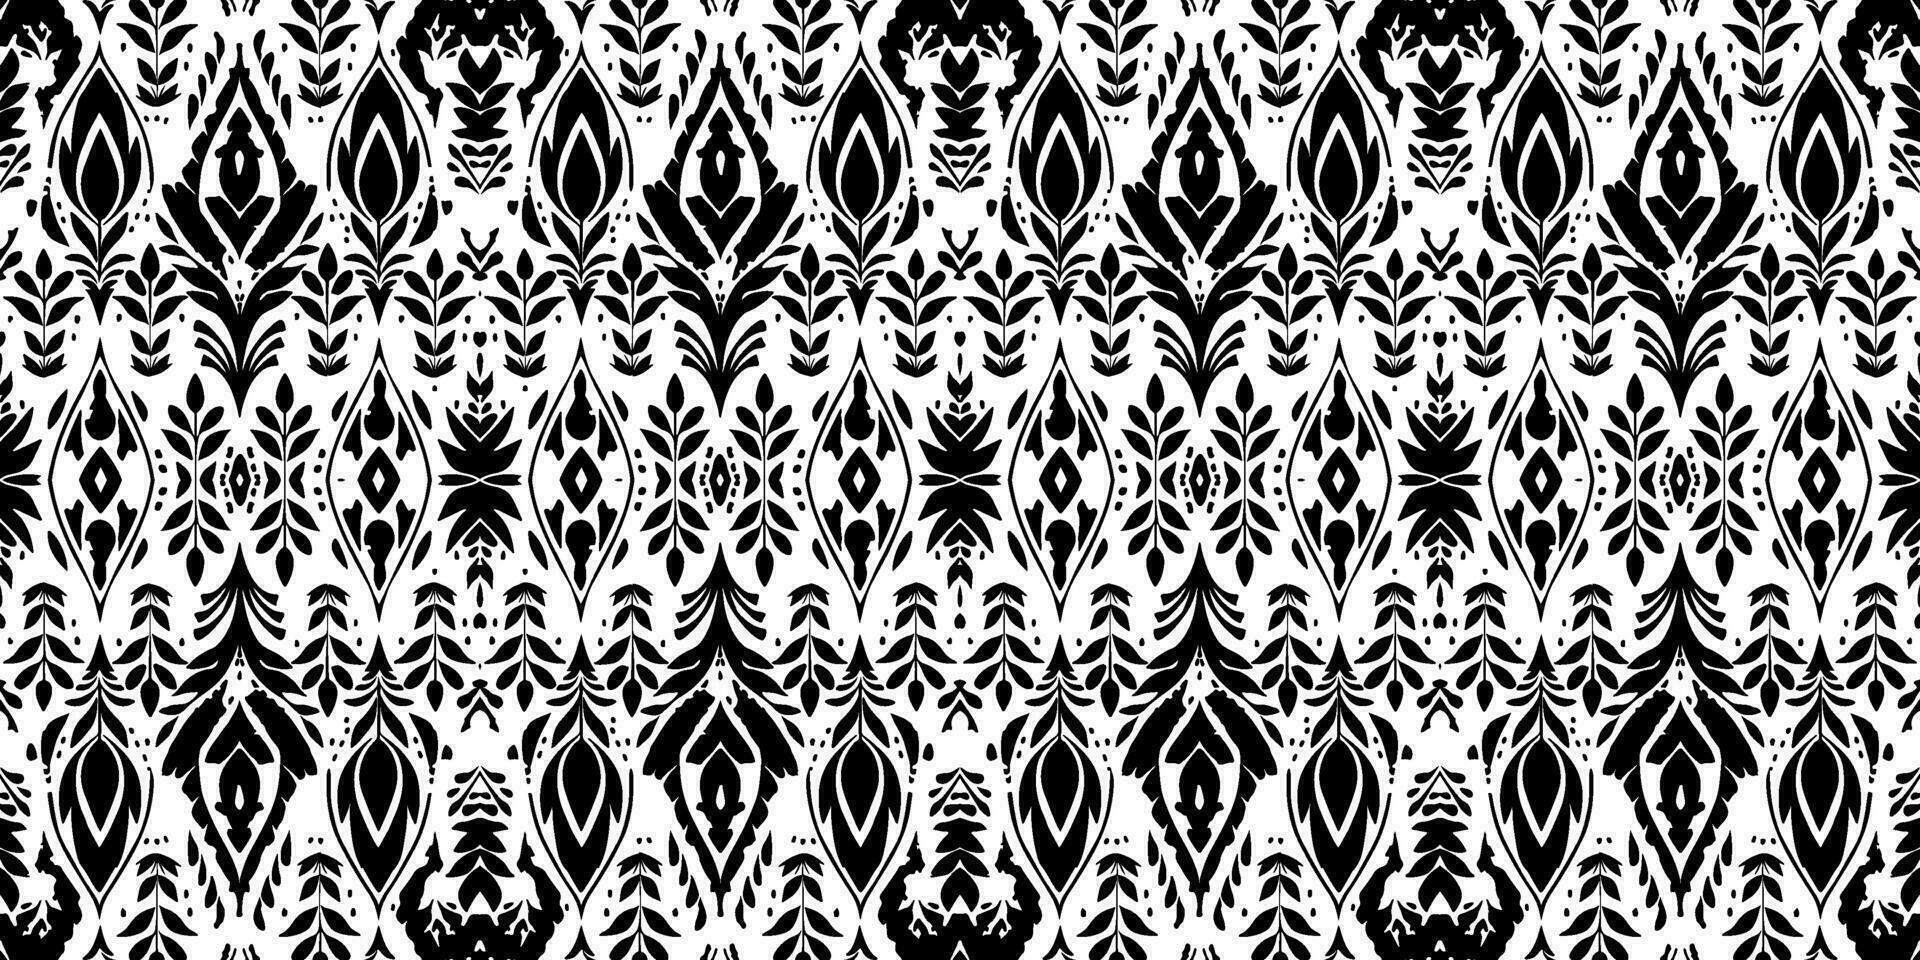 nahtlos Batik Muster, nahtlos Blumen- Batik Muster, und nahtlos Motiv Muster ähneln ethnisch Boho, aztekisch, und Ikat Stile. entworfen zum verwenden im Satin, Hintergrund, Stoff, Vorhang, Teppich, Batik vektor